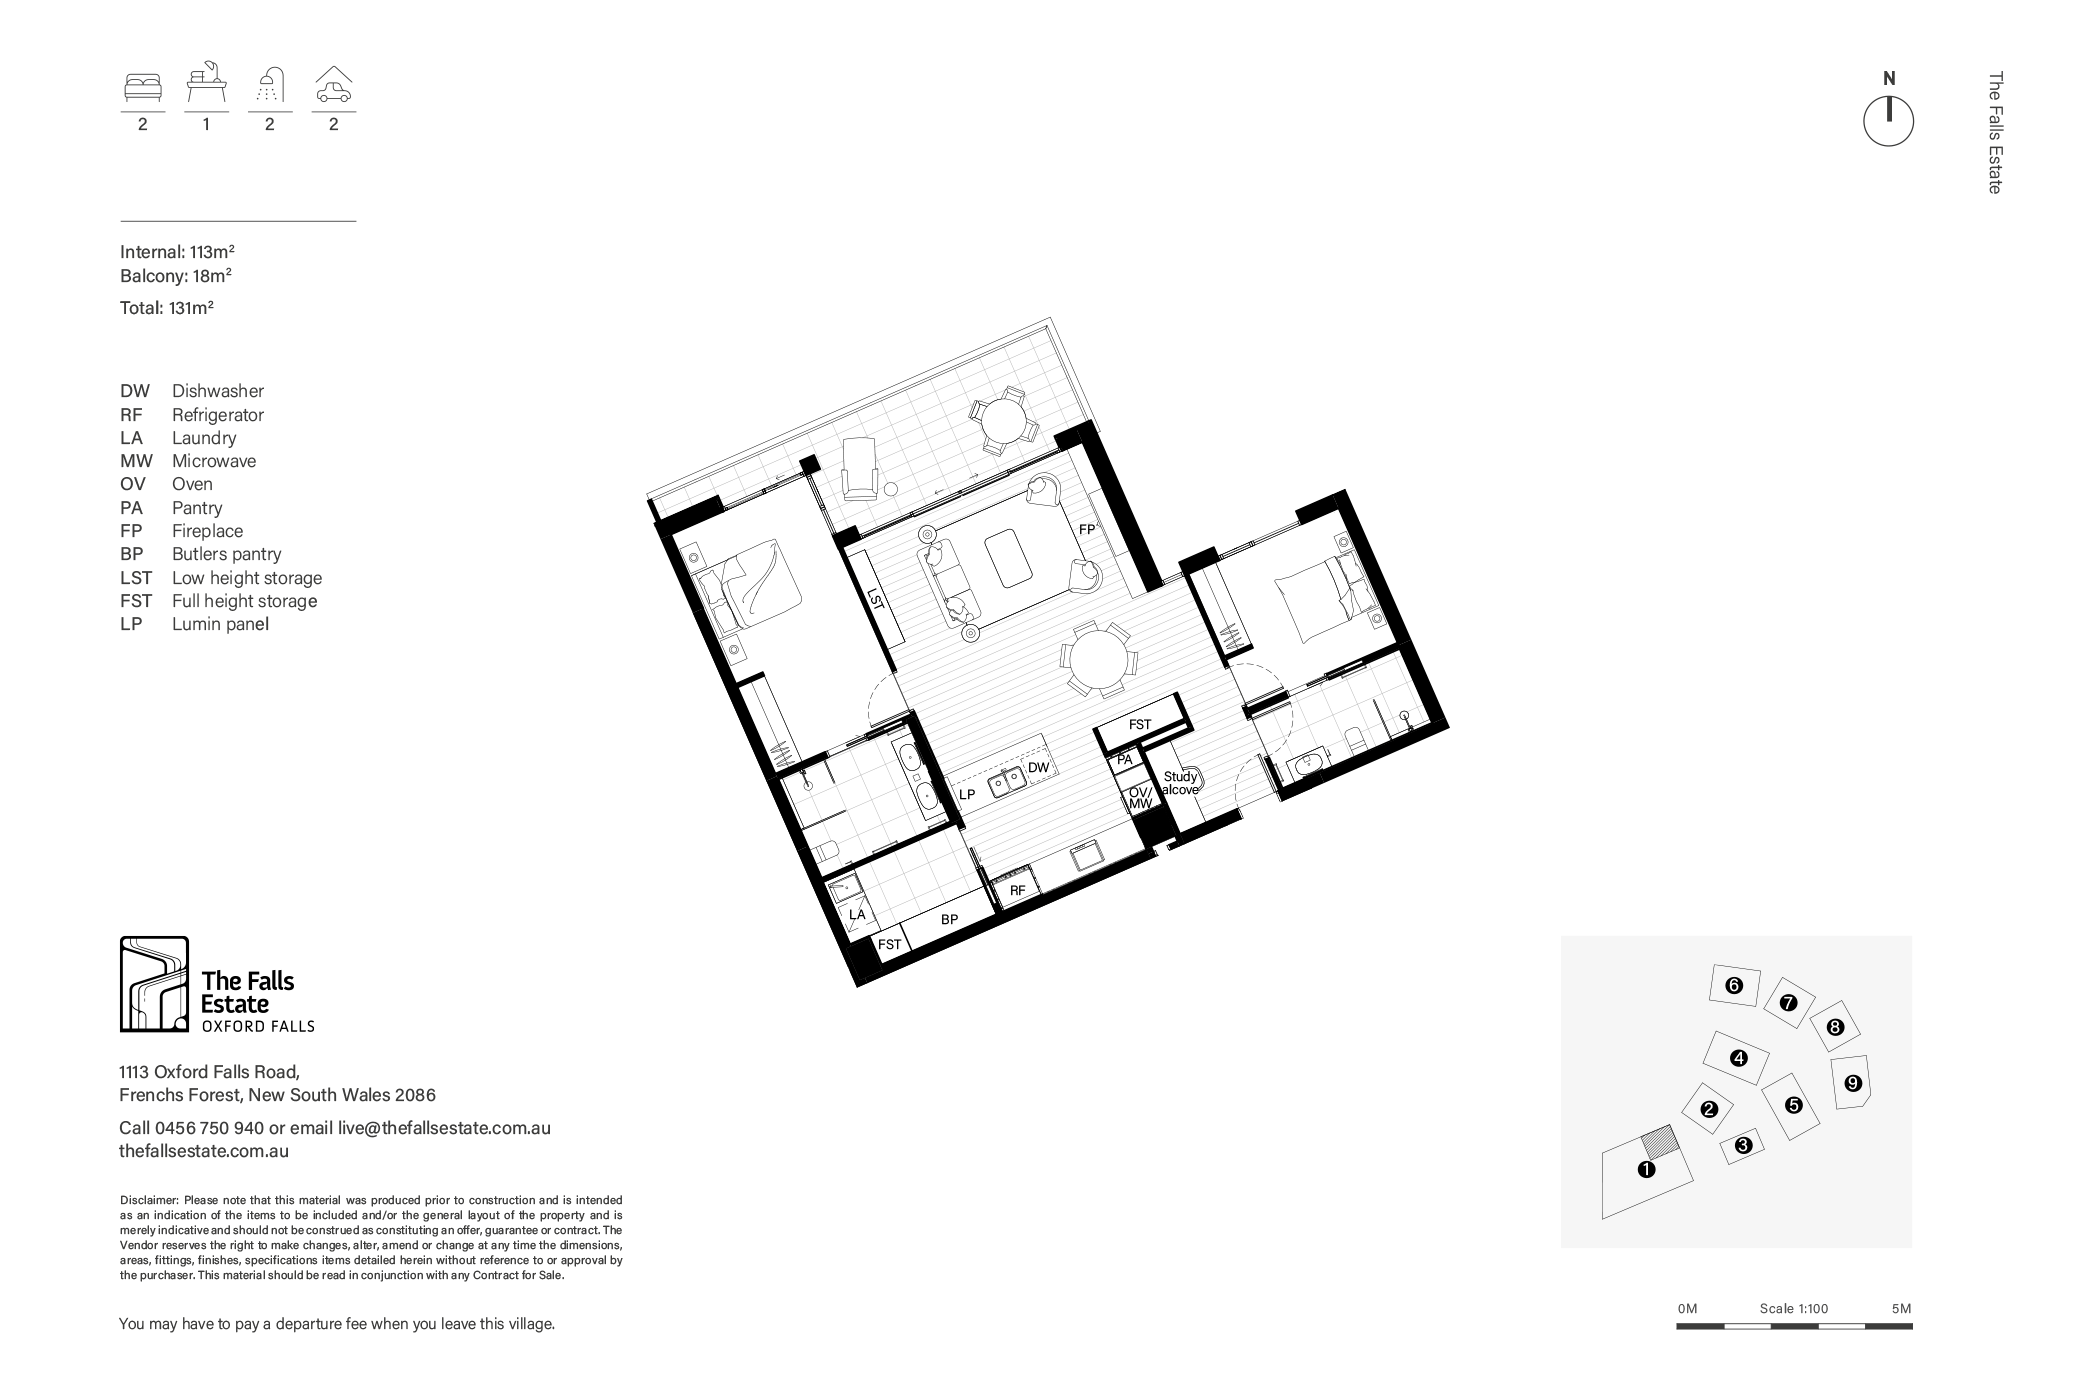 Indicative floor plan